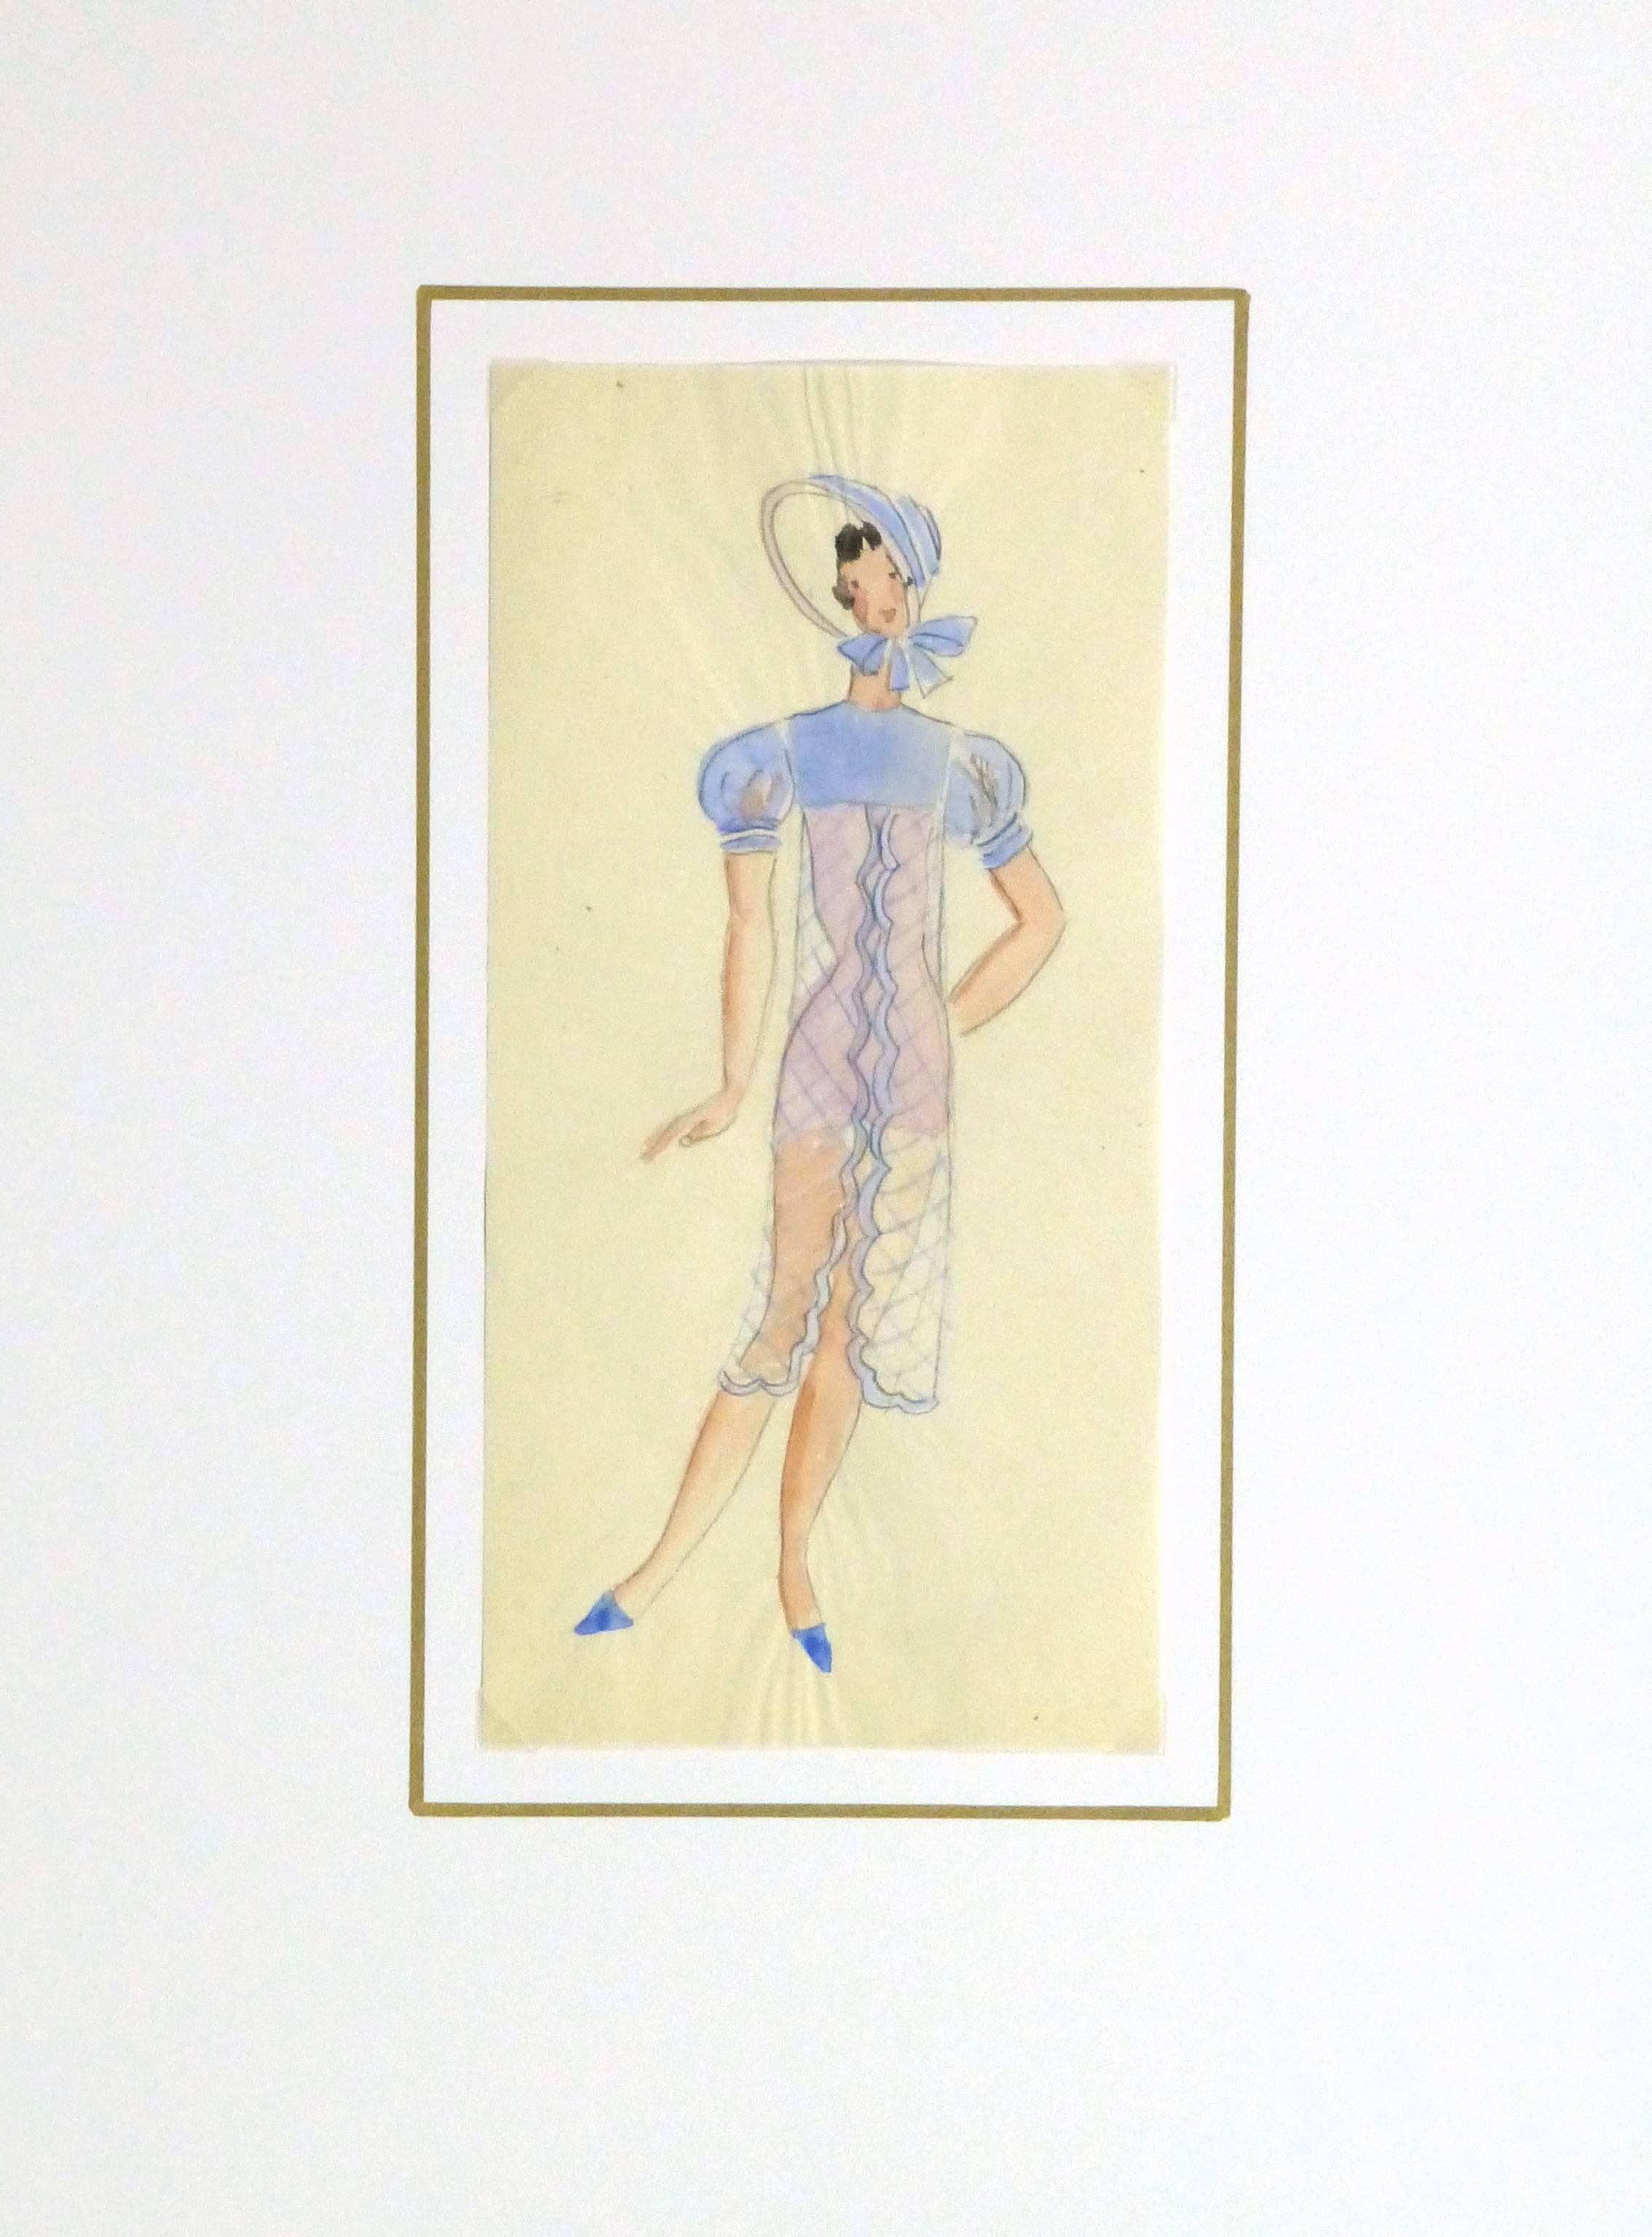 Charmante esquisse à la gouache et au crayon d'un costume de scène féminin avec bonnet assorti pour un théâtre parisien par Willie & Co, vers 1930.

Œuvre d'art originale sur papier présentée sur un tapis blanc avec une bordure dorée. Pochette